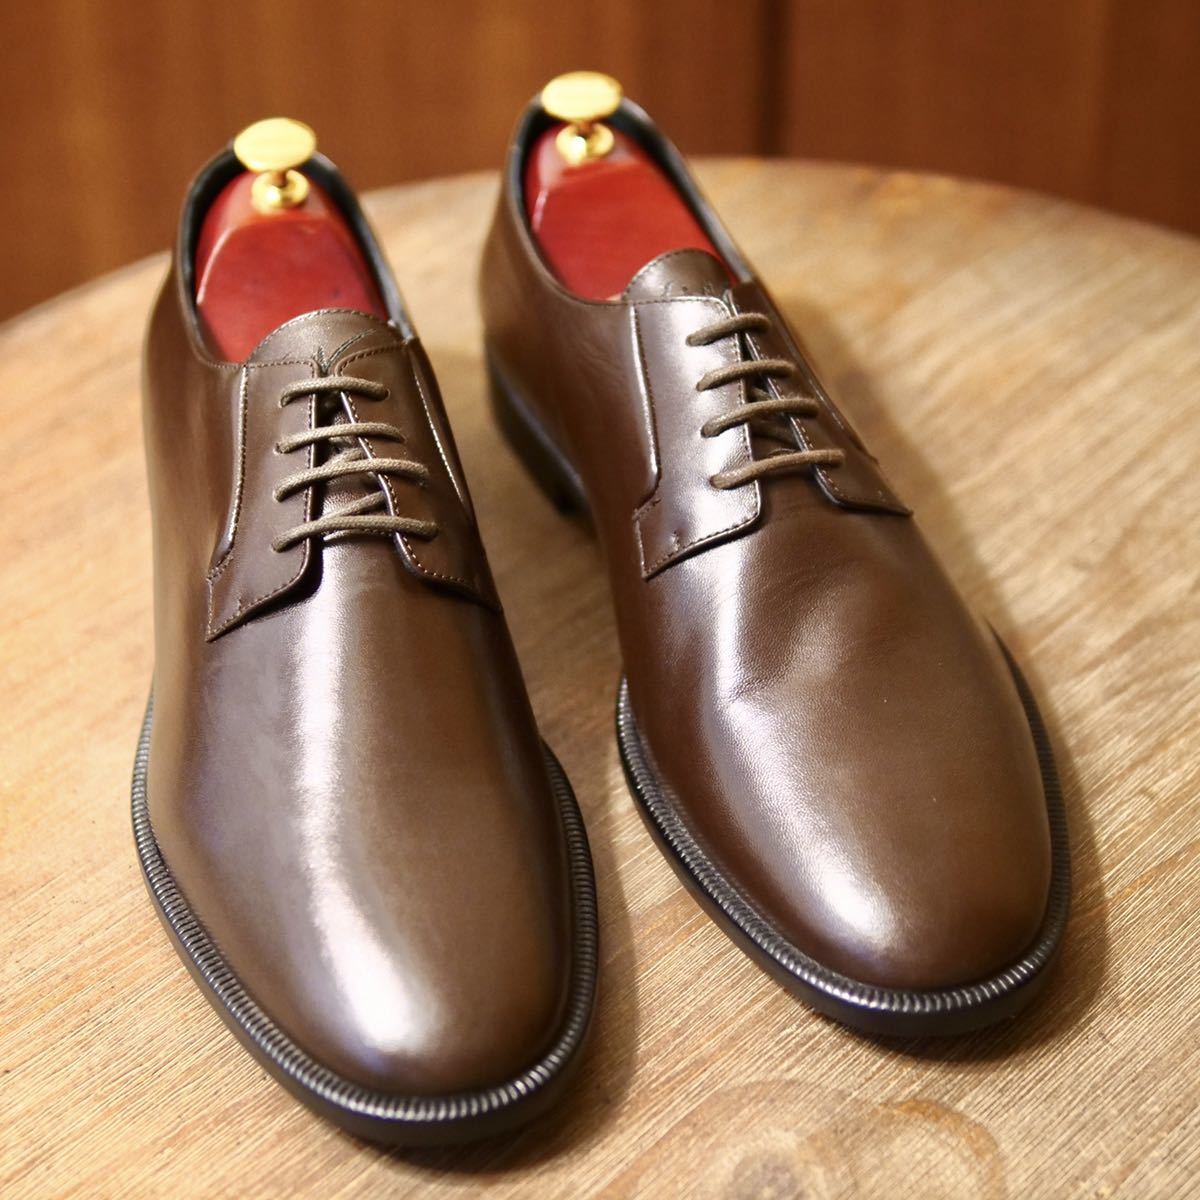 新品未使用 Giuseppe Zanotti ジュゼッペザノッティ プレーントゥダービーシューズ ブラウン 45 27.5-28.0cm相当 ダークブラウン 革靴